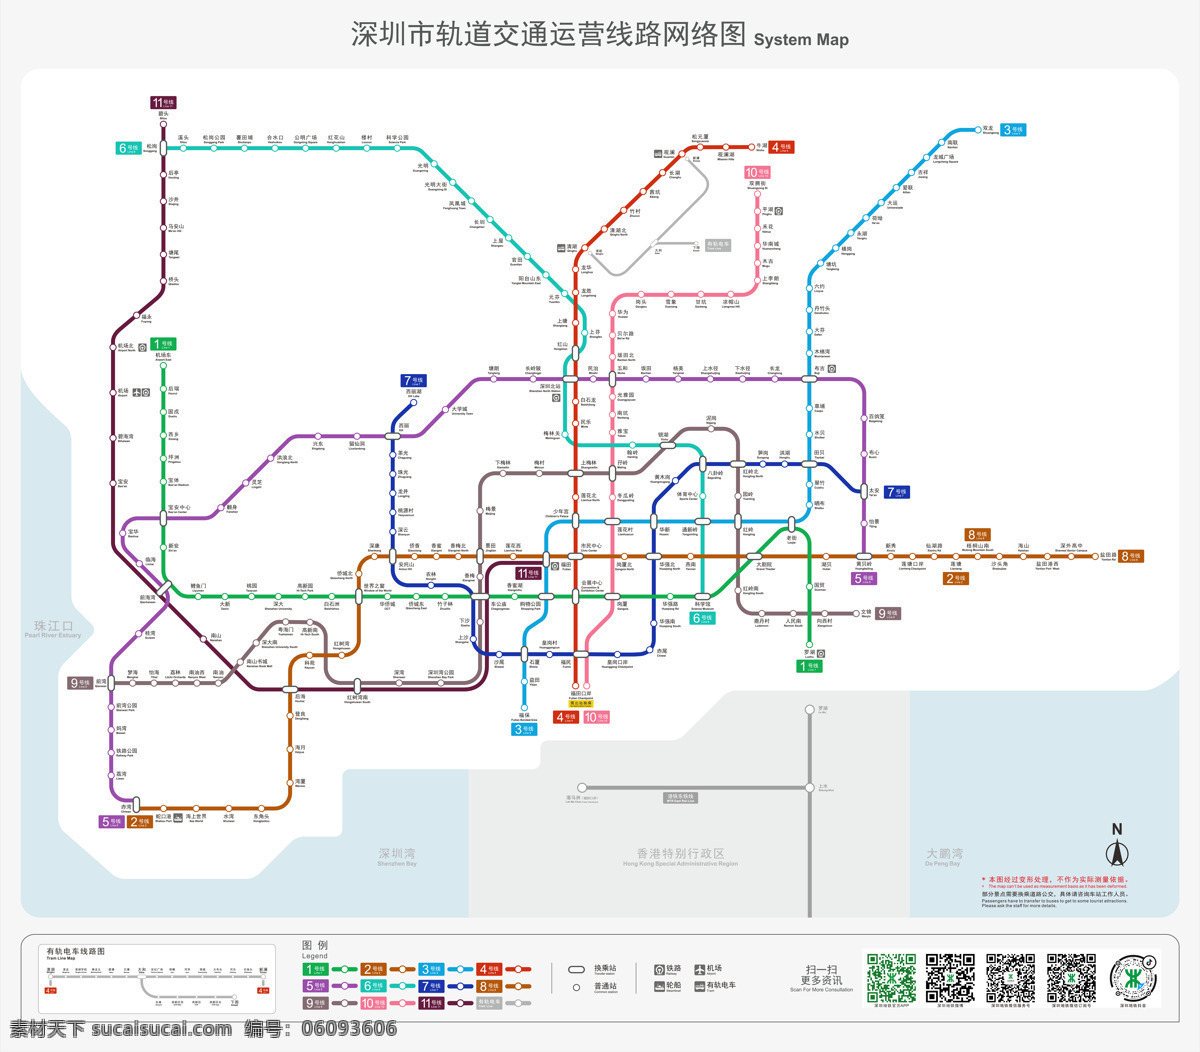 深圳 地铁 线路图 深圳地铁 轨道交通 运营 网络图 最新 2020